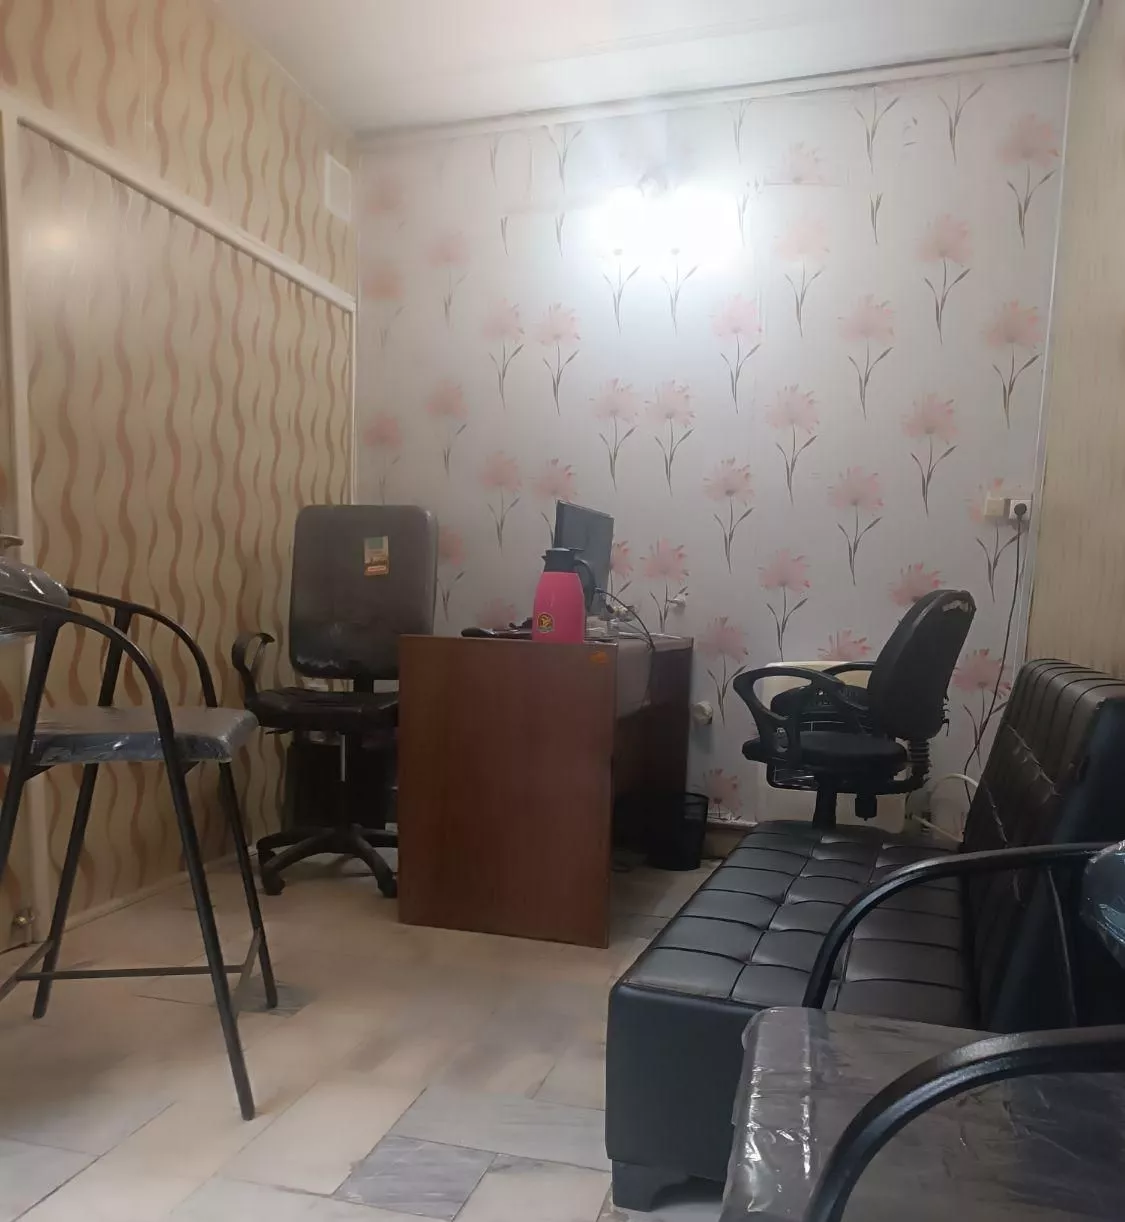 اجاره مشترک دفتر کار در مسجدسید